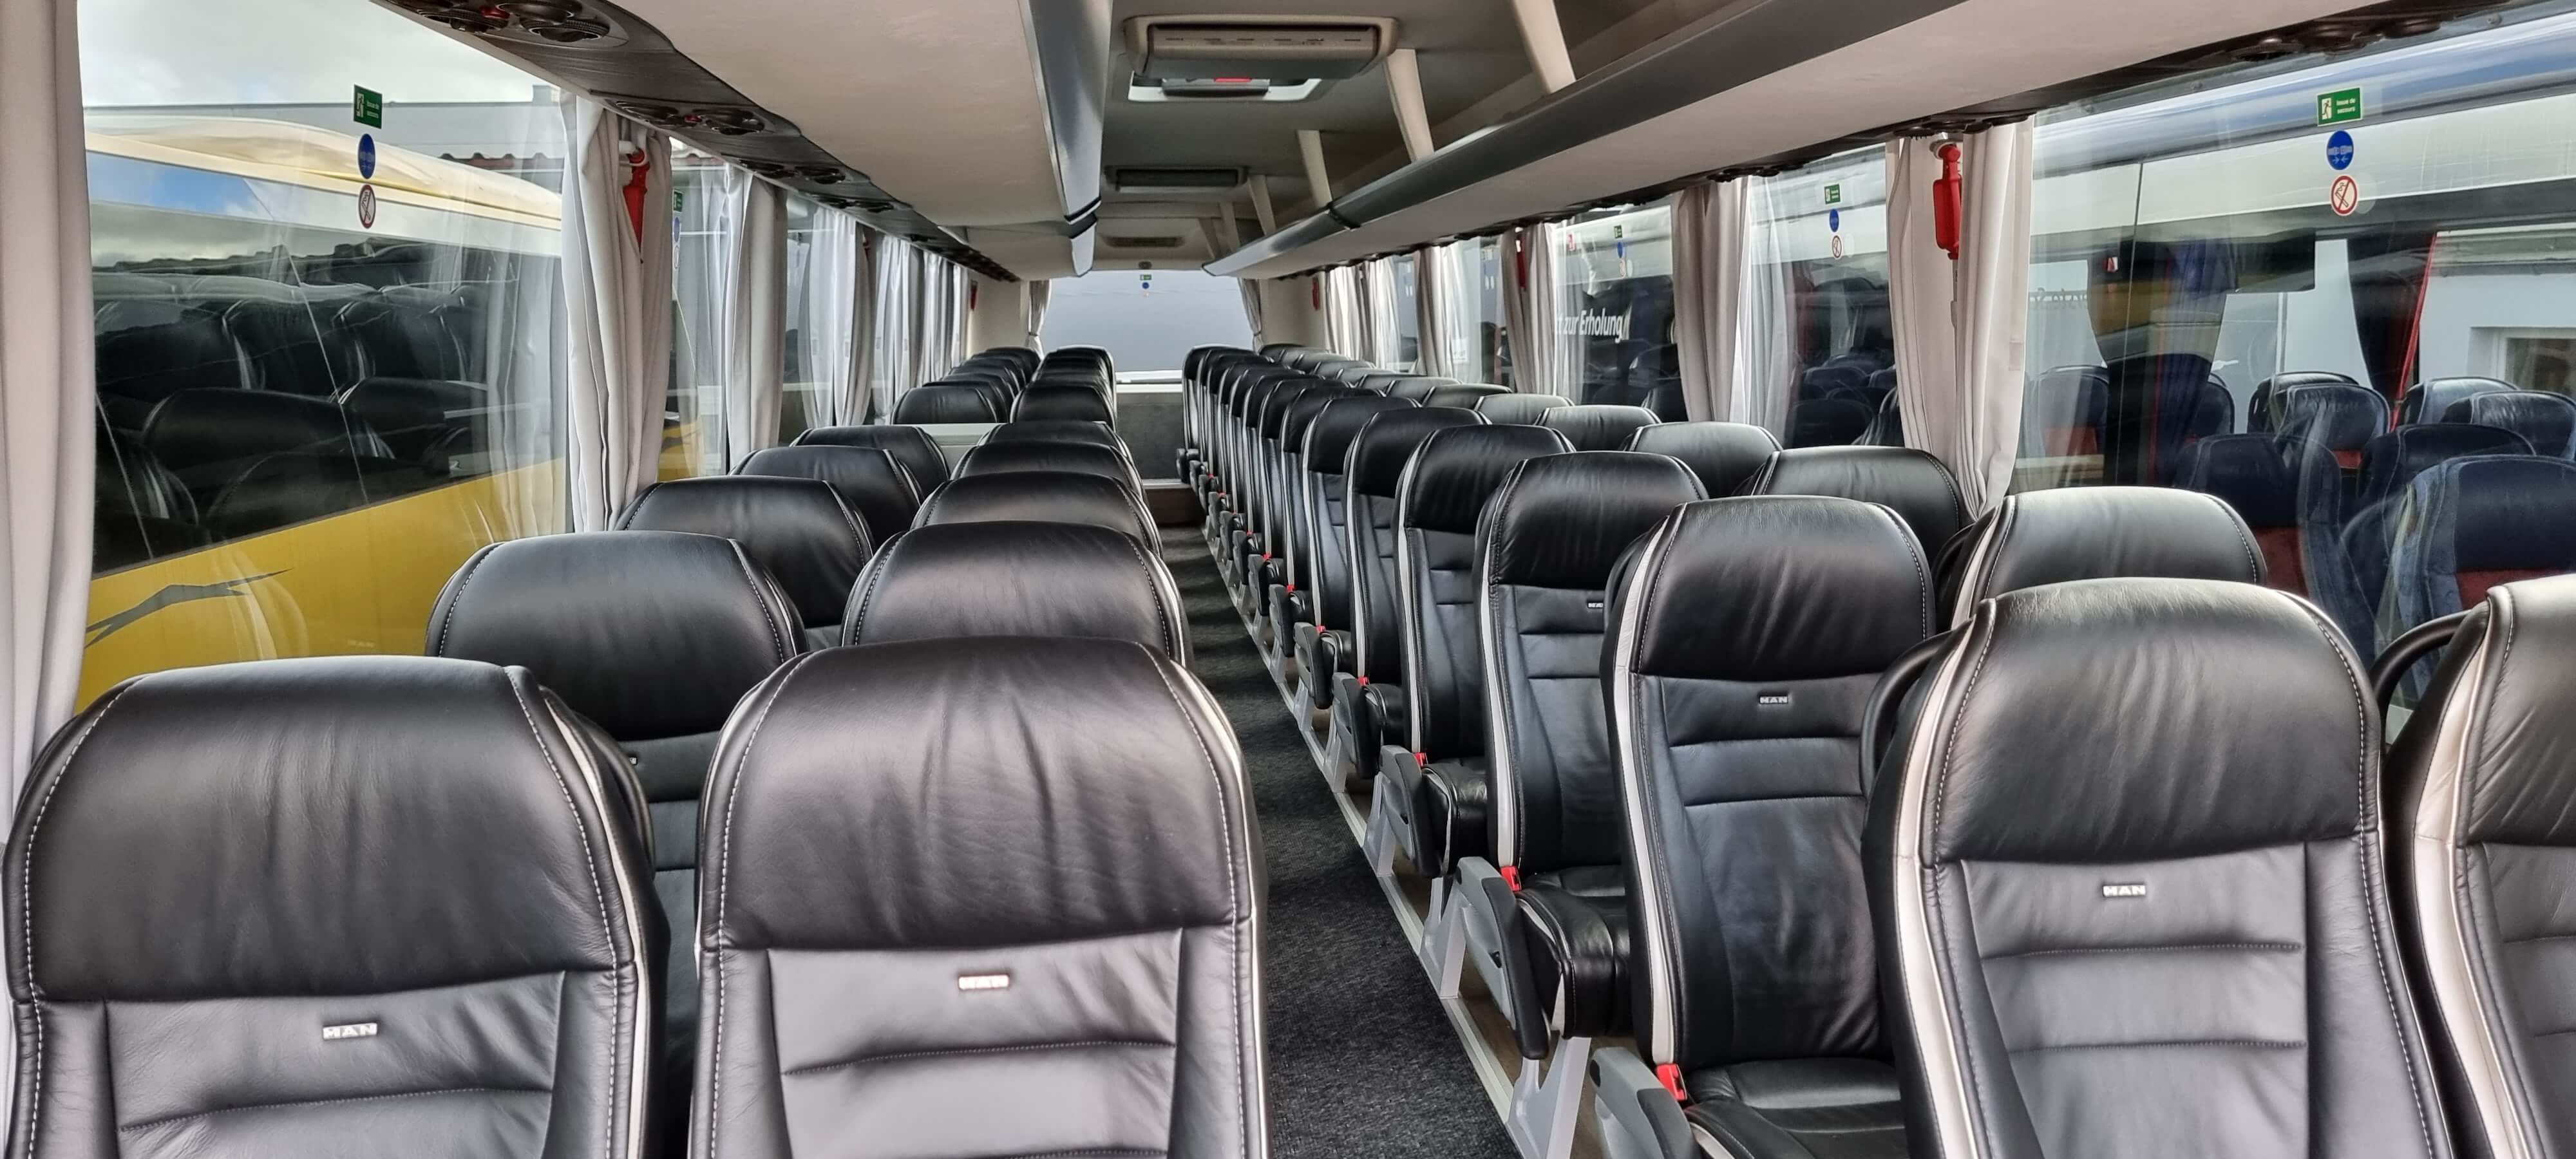 Huur een VIP Touringcar (MAN Lion Coach 2018) met 53 stoelen van Direct Vip Service uit Amsterdam 